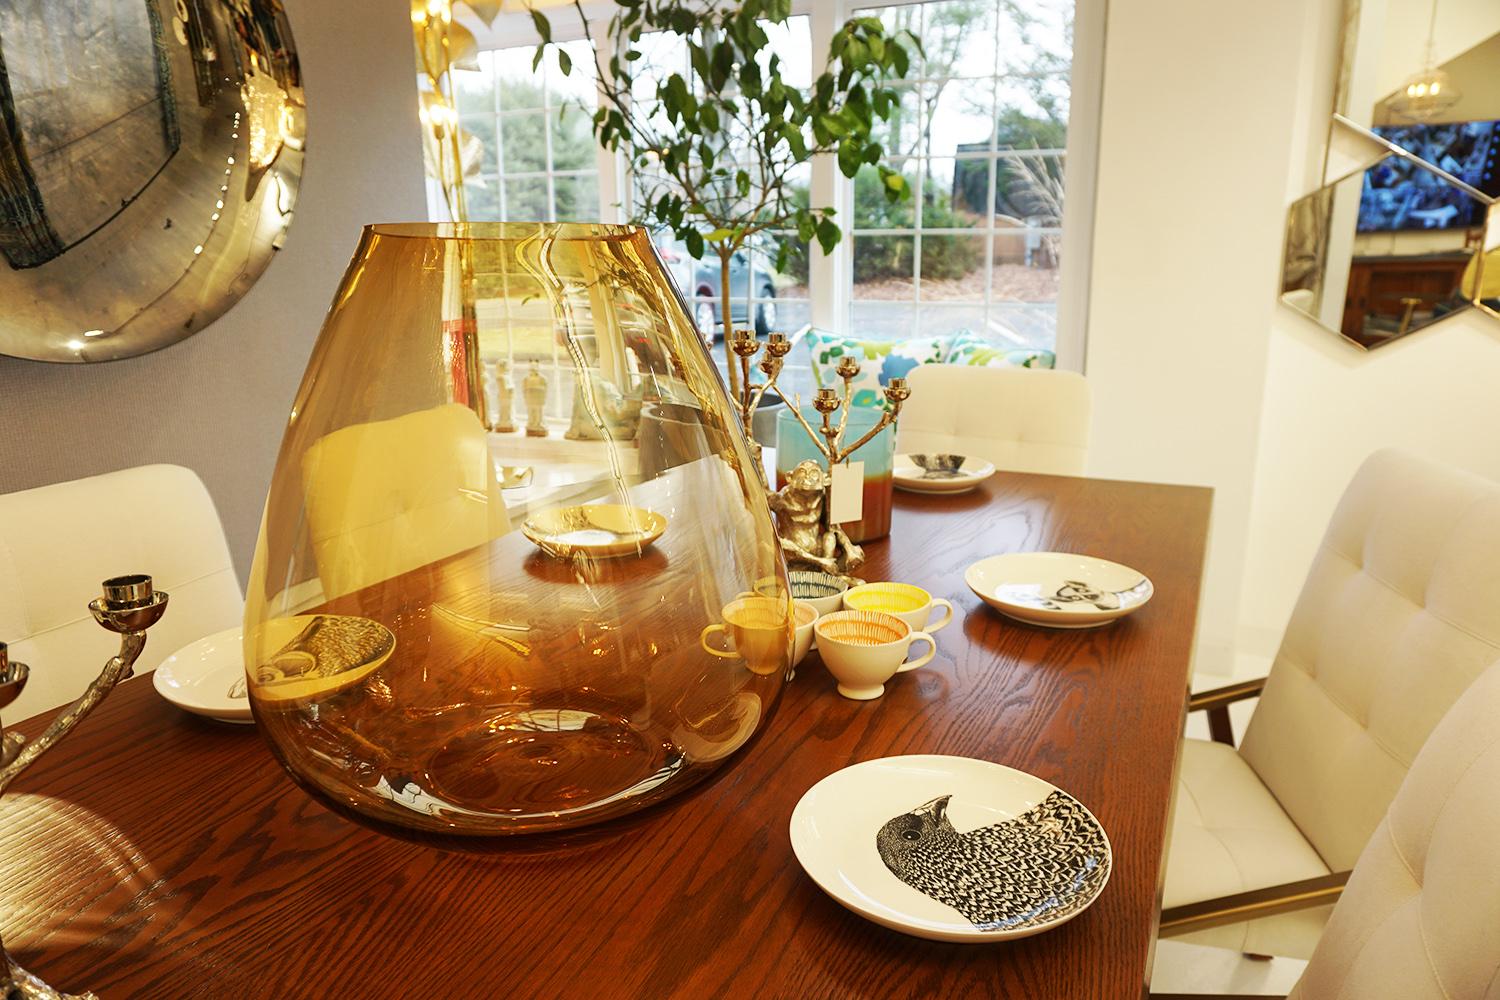 Ob als beeindruckendes Gefäß für Blumen oder als eleganter dekorativer Mittelpunkt, die Amber Whiskey Vase verleiht dem Raum ein angenehmes und schönes Aussehen. Die Vase besteht aus Glas mit einem bernsteinfarbenen Farbton, der beruhigend und